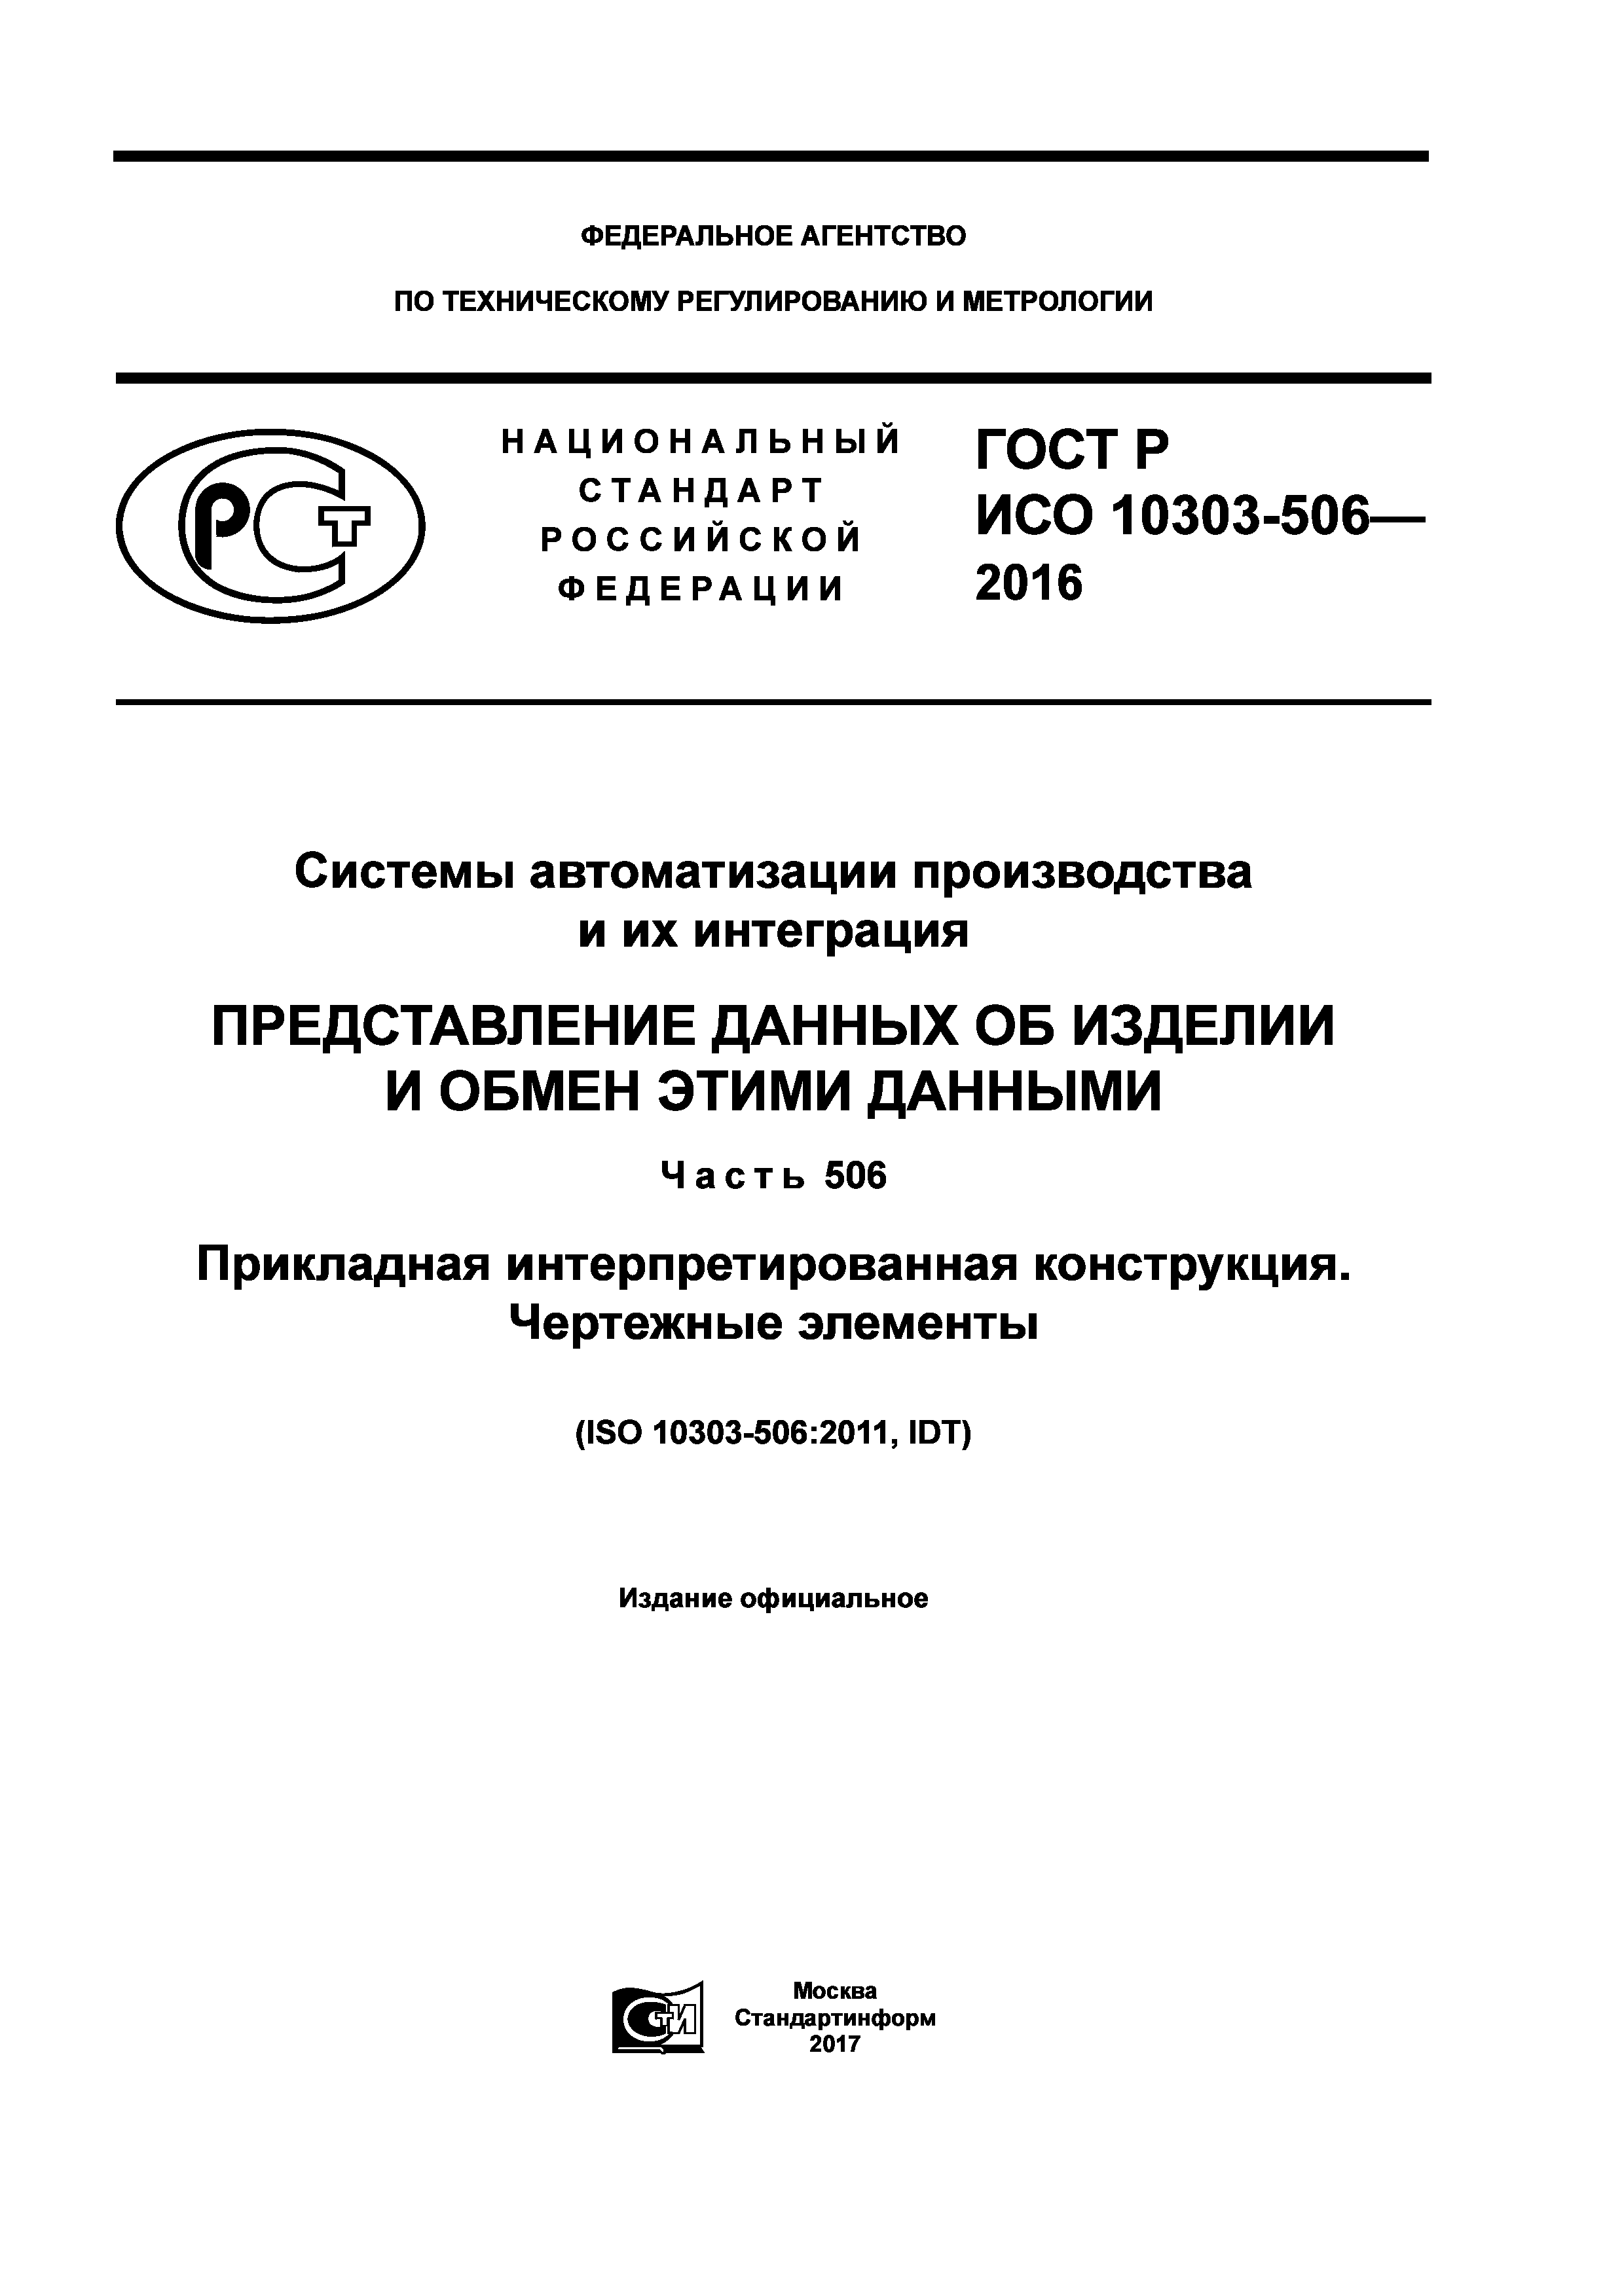 ГОСТ Р ИСО 10303-506-2016